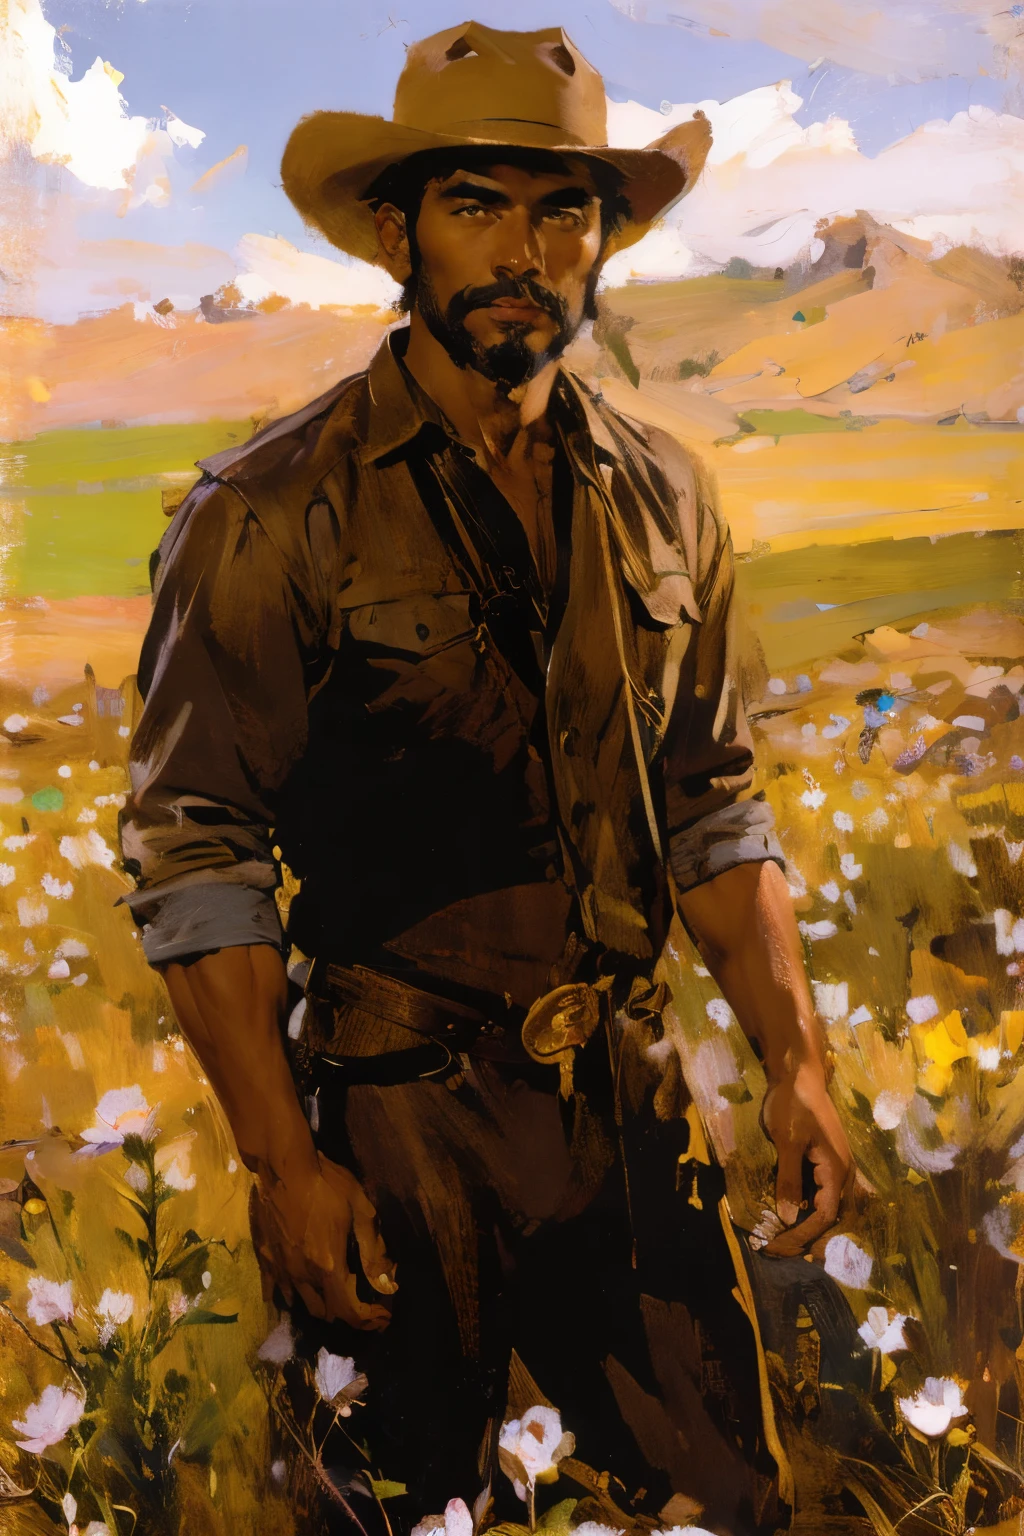 孤獨的男性牛仔在田野上拿著野玫瑰, 棕色服装, 菲律賓裔美國人, 英俊的脸, 淺色臉部毛髮, 中長度的頭髮, 淺棕色牛仔帽,